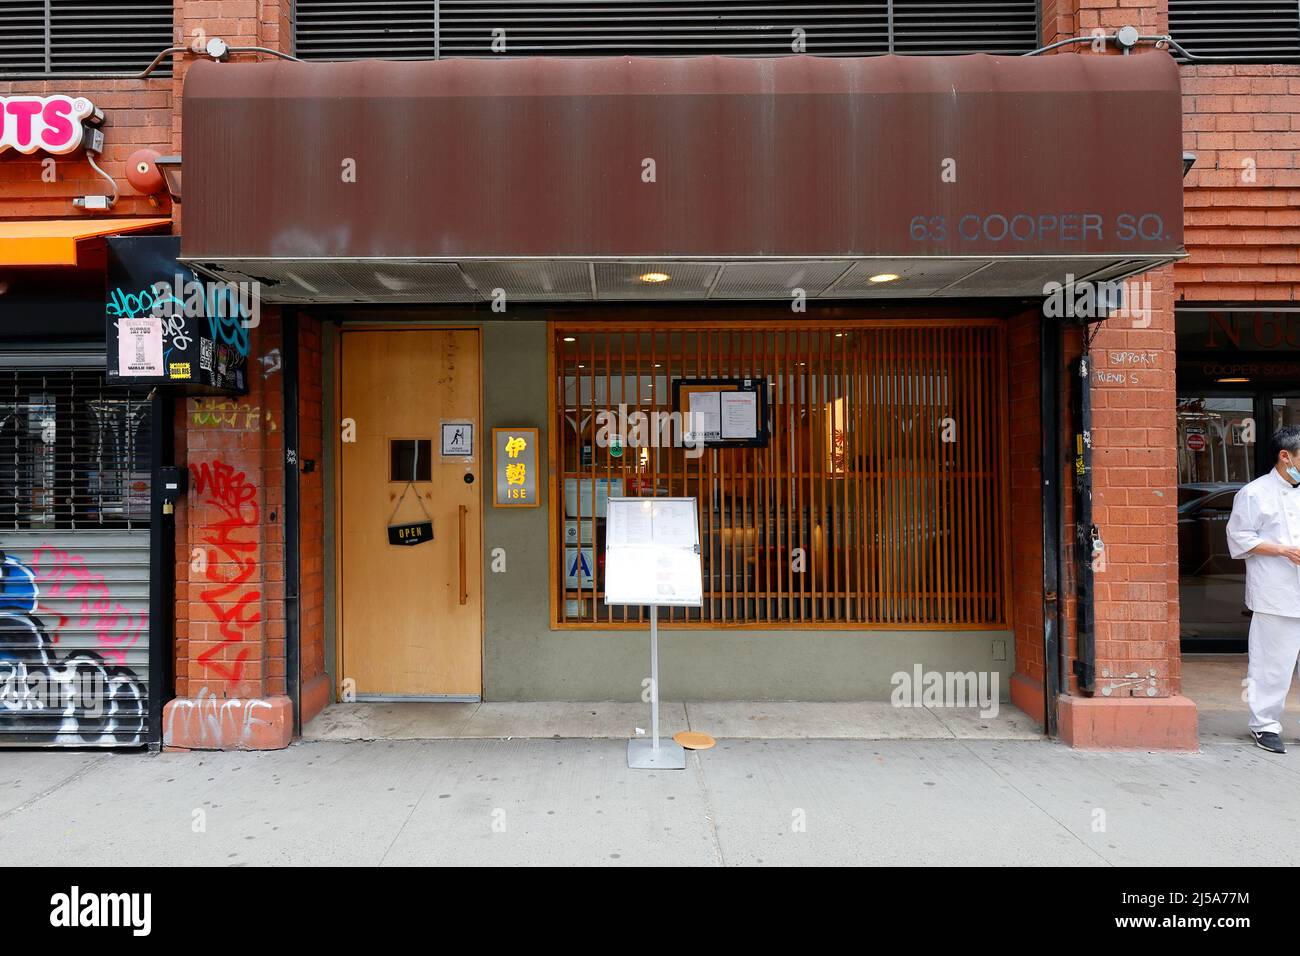 ISE, 63 Cooper Sq, New York, NYC photo d'un restaurant japonais de sushis et de nouilles soba dans le quartier East Village de Manhattan Banque D'Images